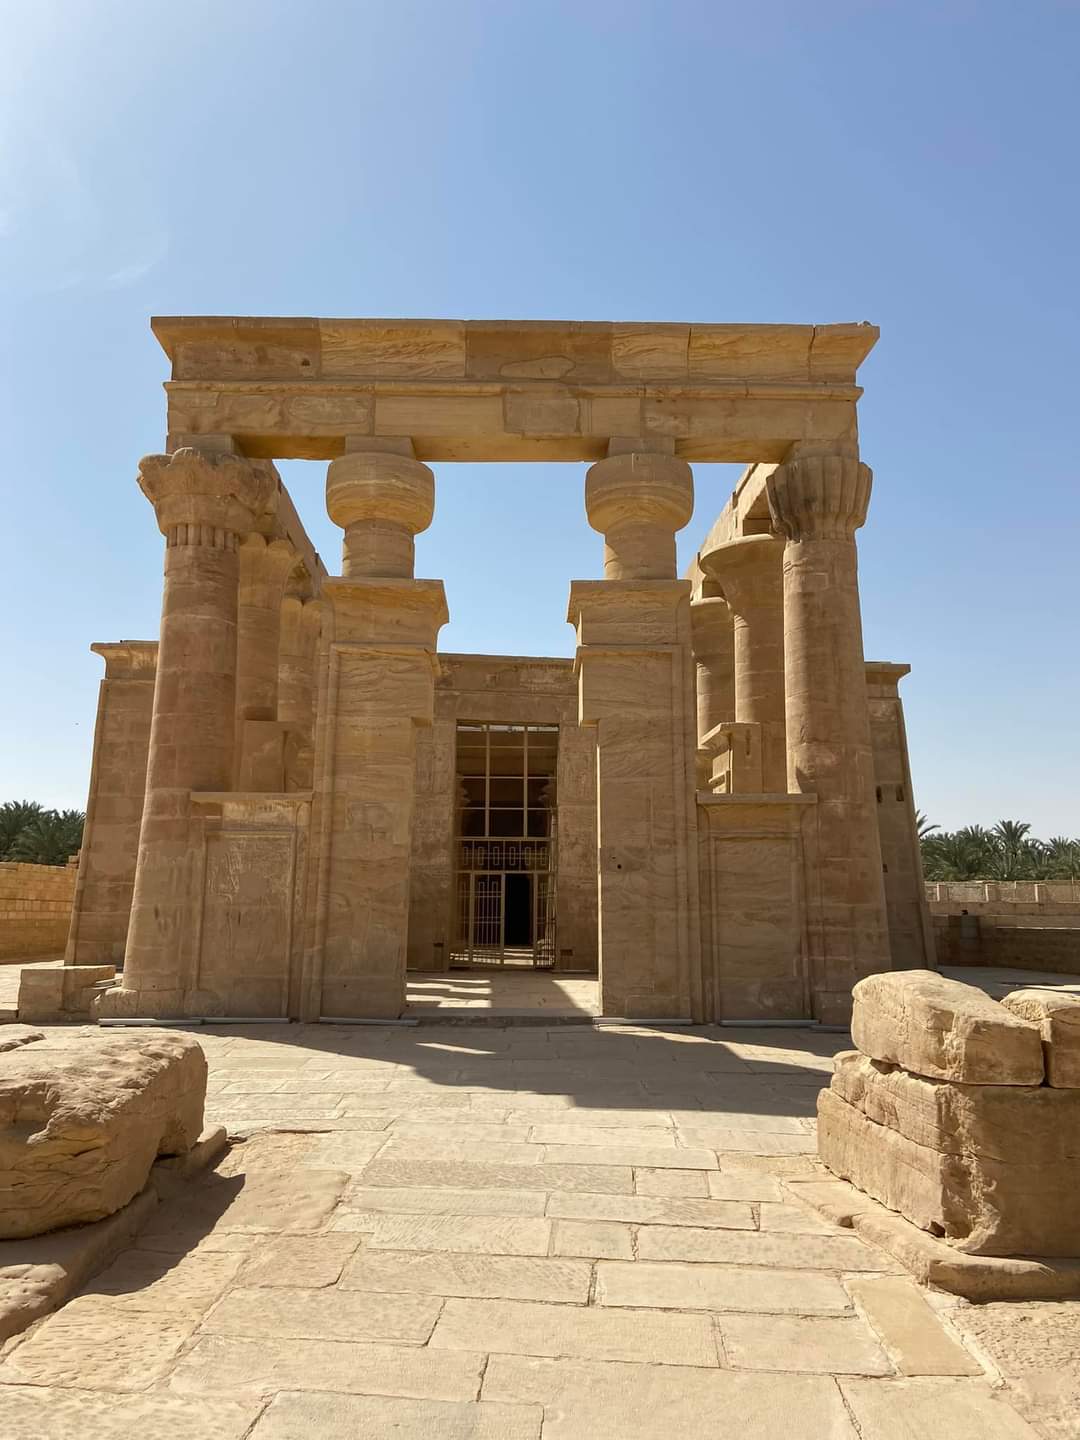 المعبد الوحيد في مصر من العصر الصاوى الفارسي